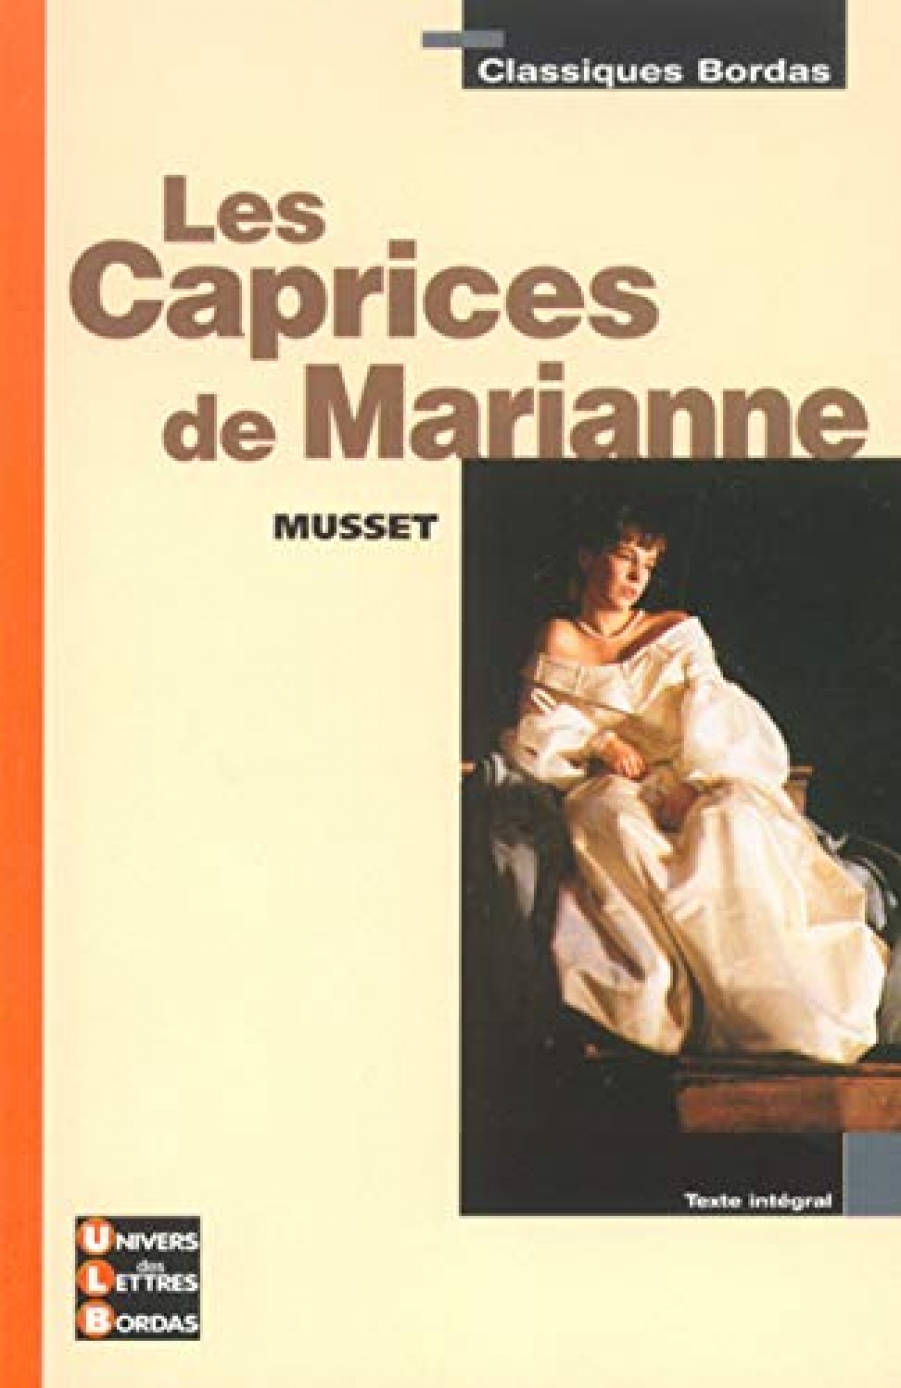 Bordas MussetLes Caprices de Marianne 